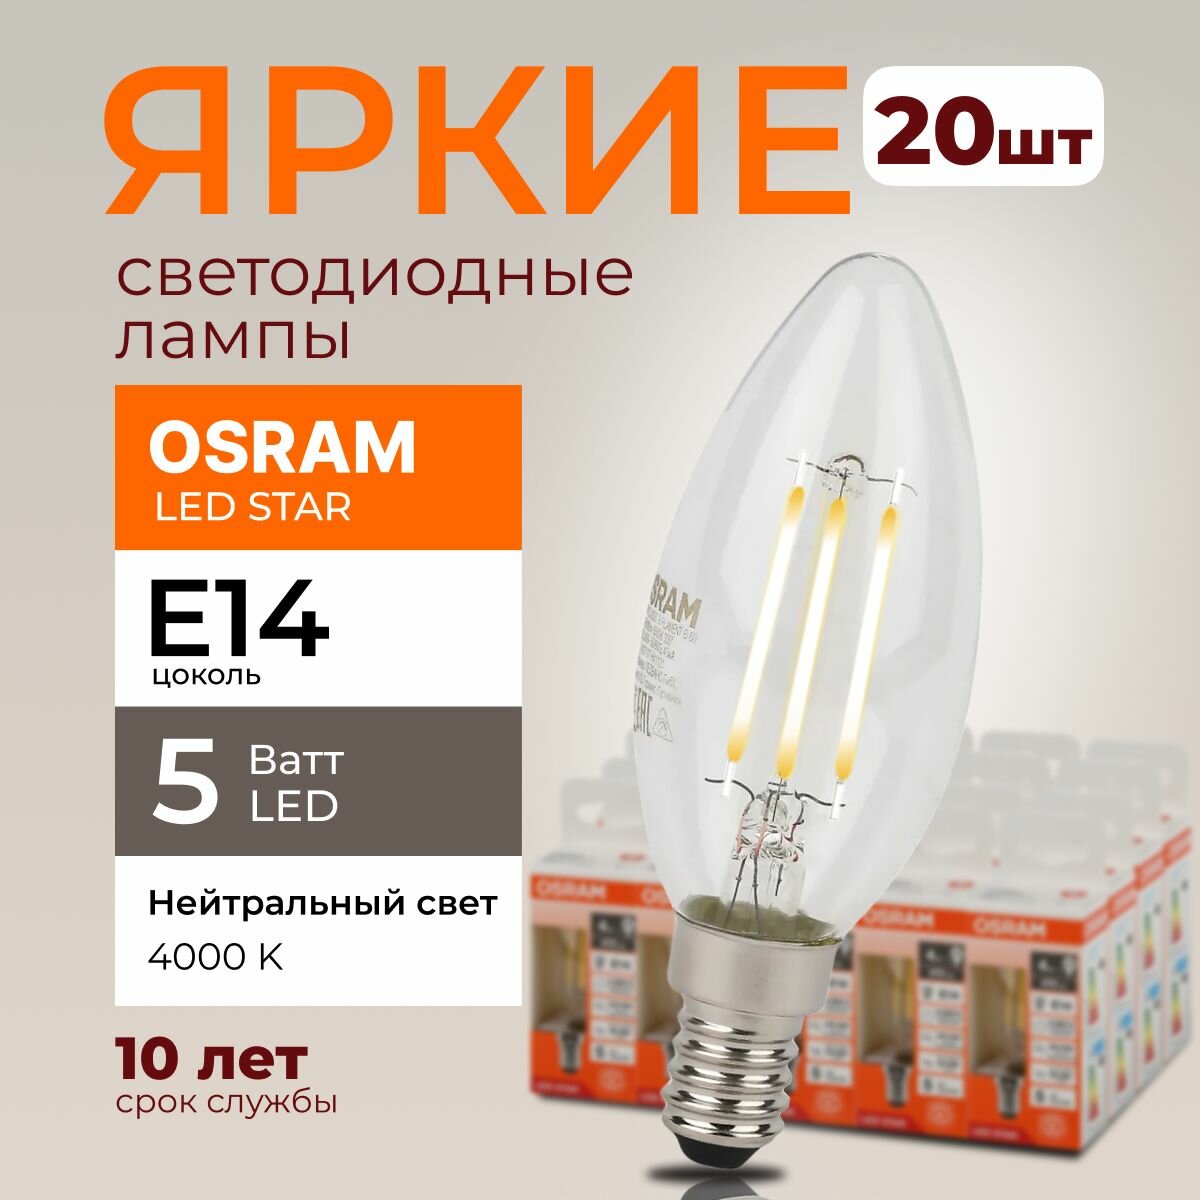 Светодиодная лампочка OSRAM E14 5 Ватт 4000К филаментная нейтральный белый свет CL свеча 220-240V LED 840, 5W, 600lm, набор 20шт.